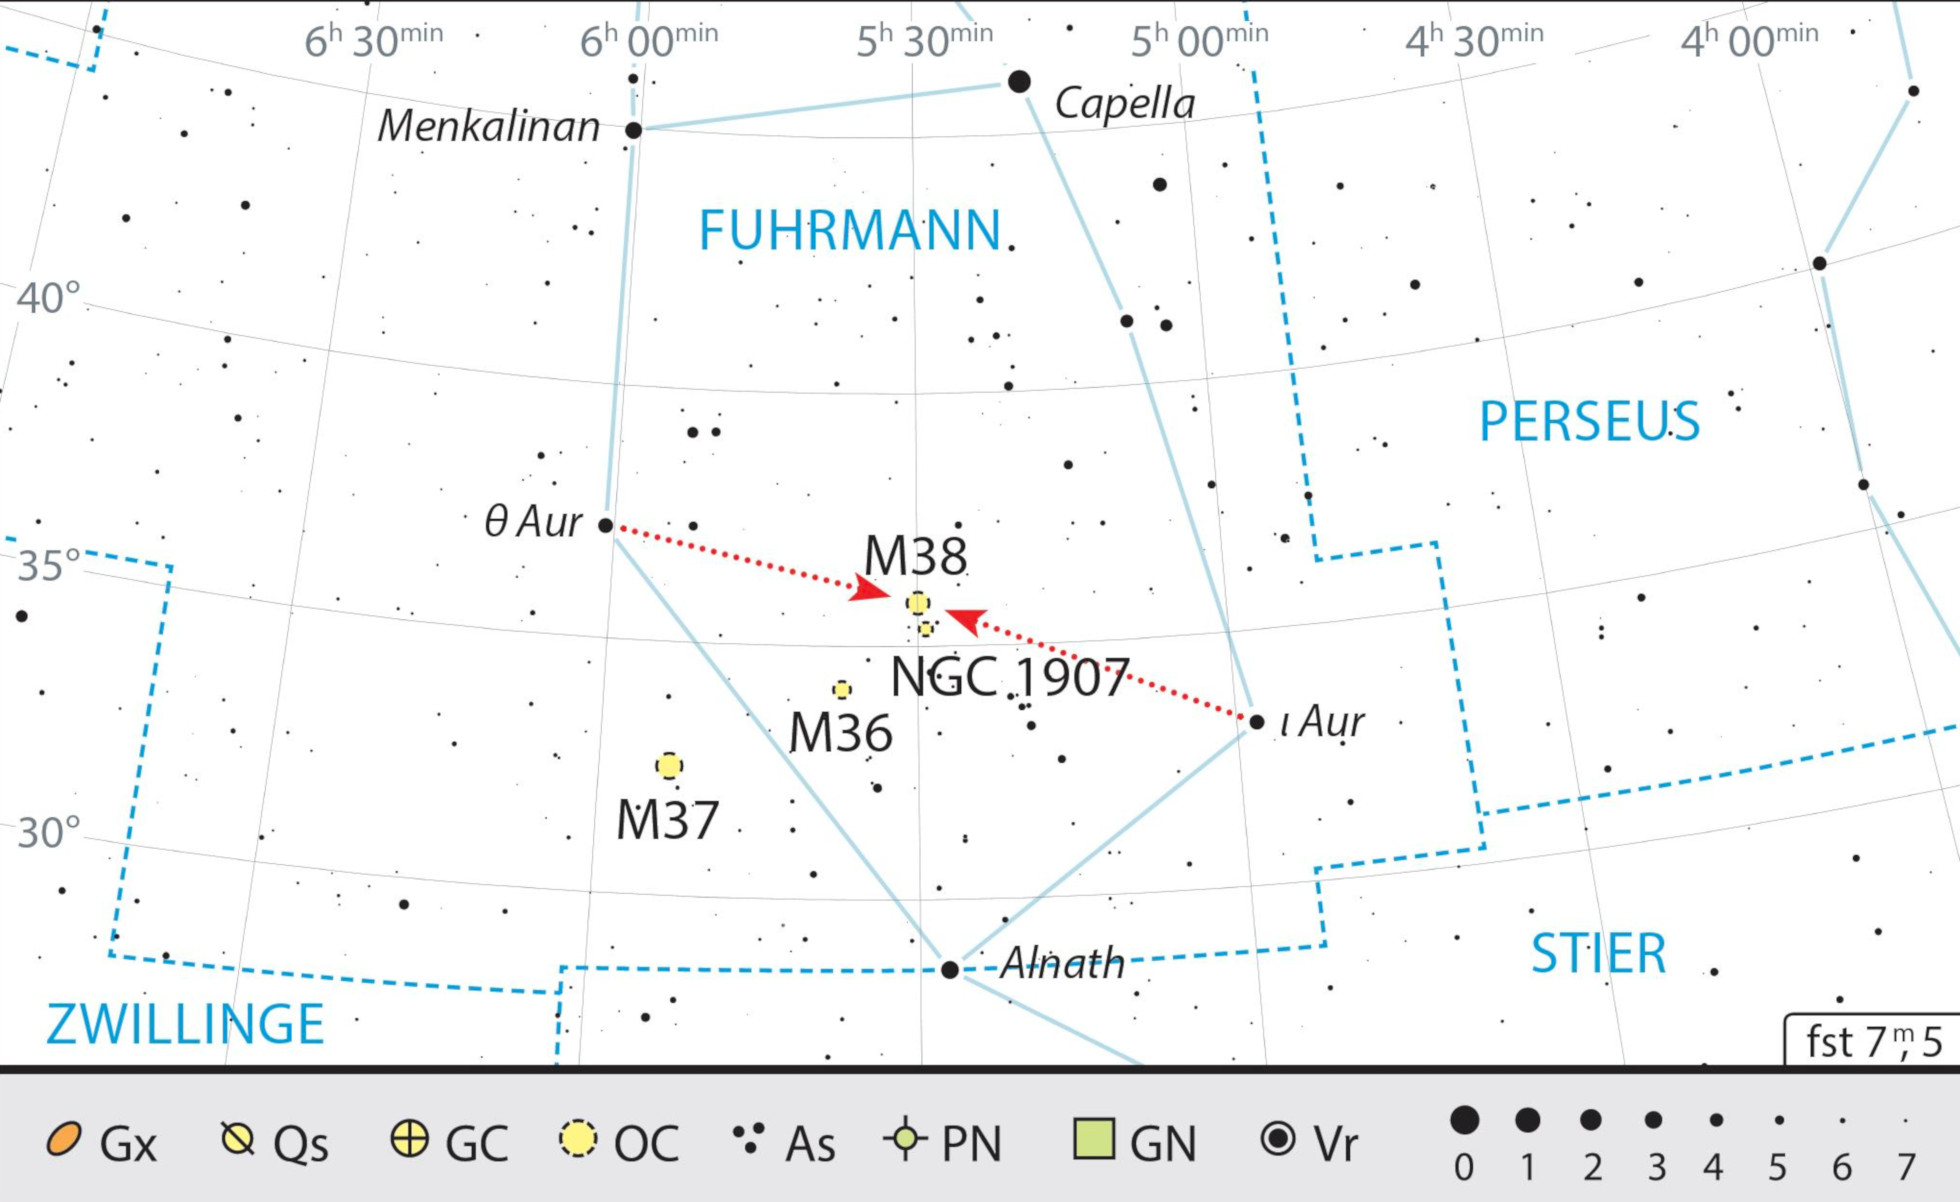 Obie gromady łatwo namierzyć w połowie drogi między gwiazdami ι oraz θ Aur. J Scholten